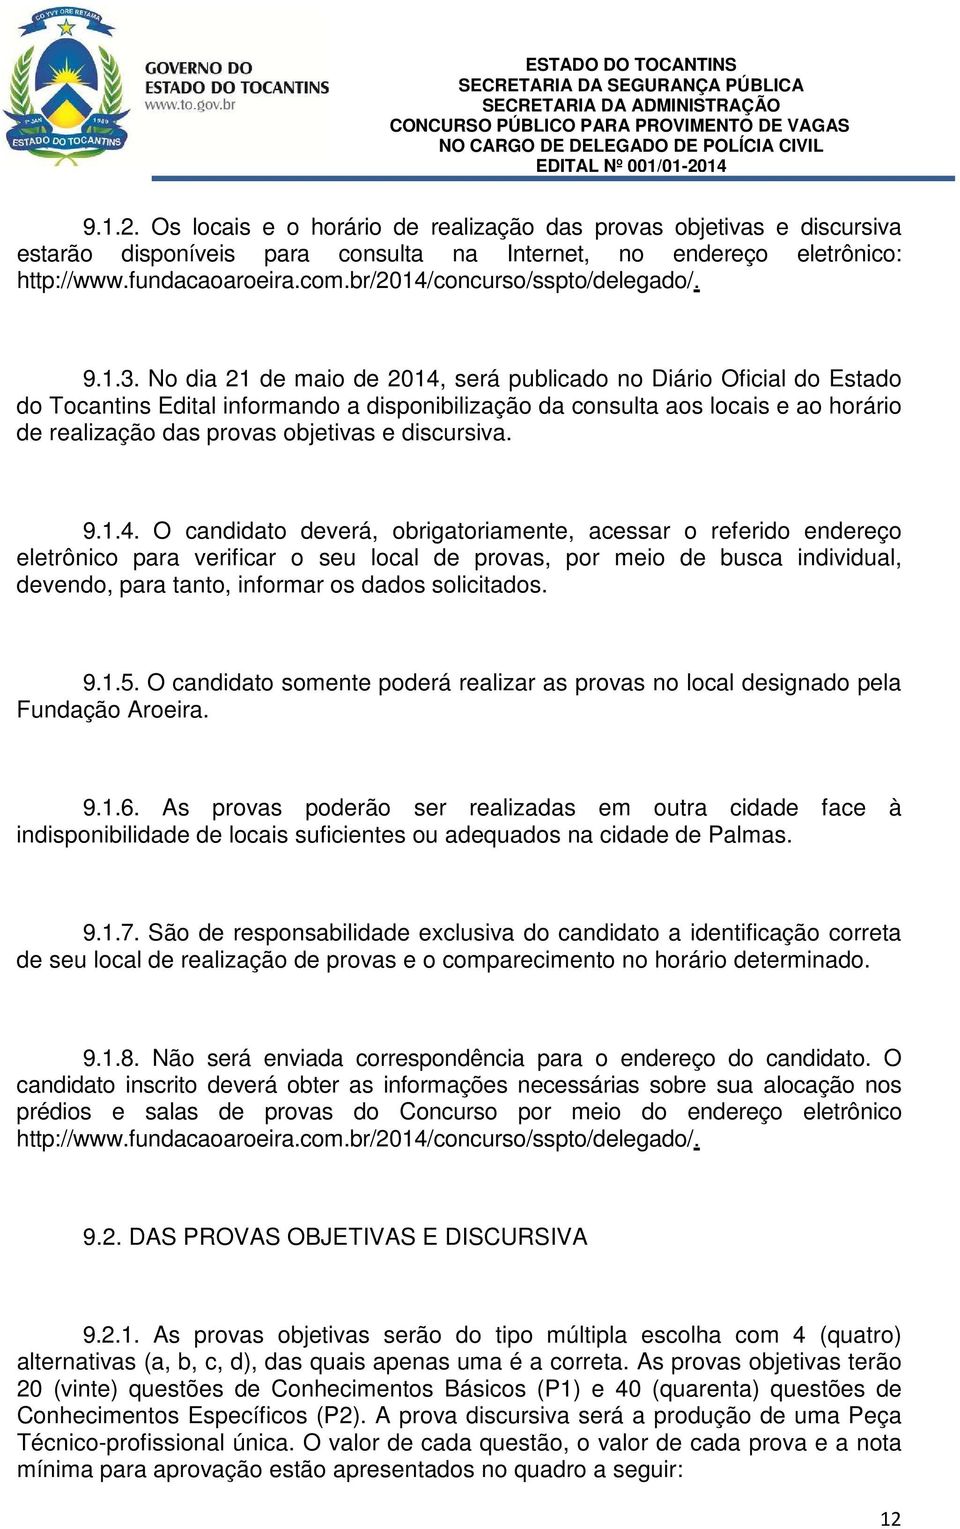 No dia 21 de maio de 2014, será publicado no Diário Oficial do Estado do Tocantins Edital informando a disponibilização da consulta aos locais e ao horário de realização das provas objetivas e